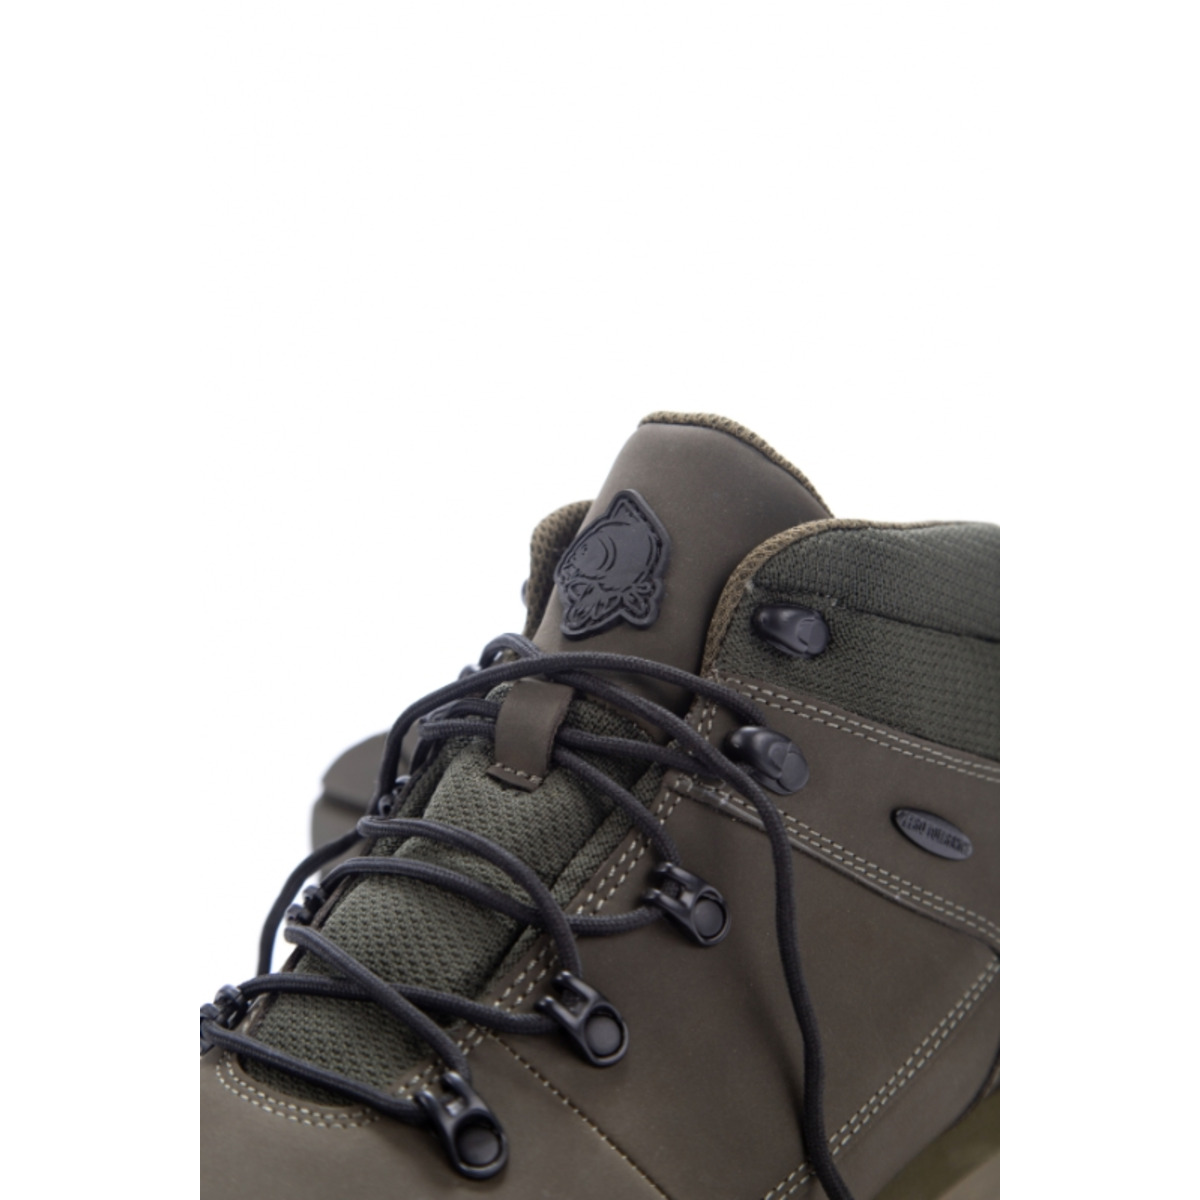 Nash Zt Trail Boots - Size 11 (45)